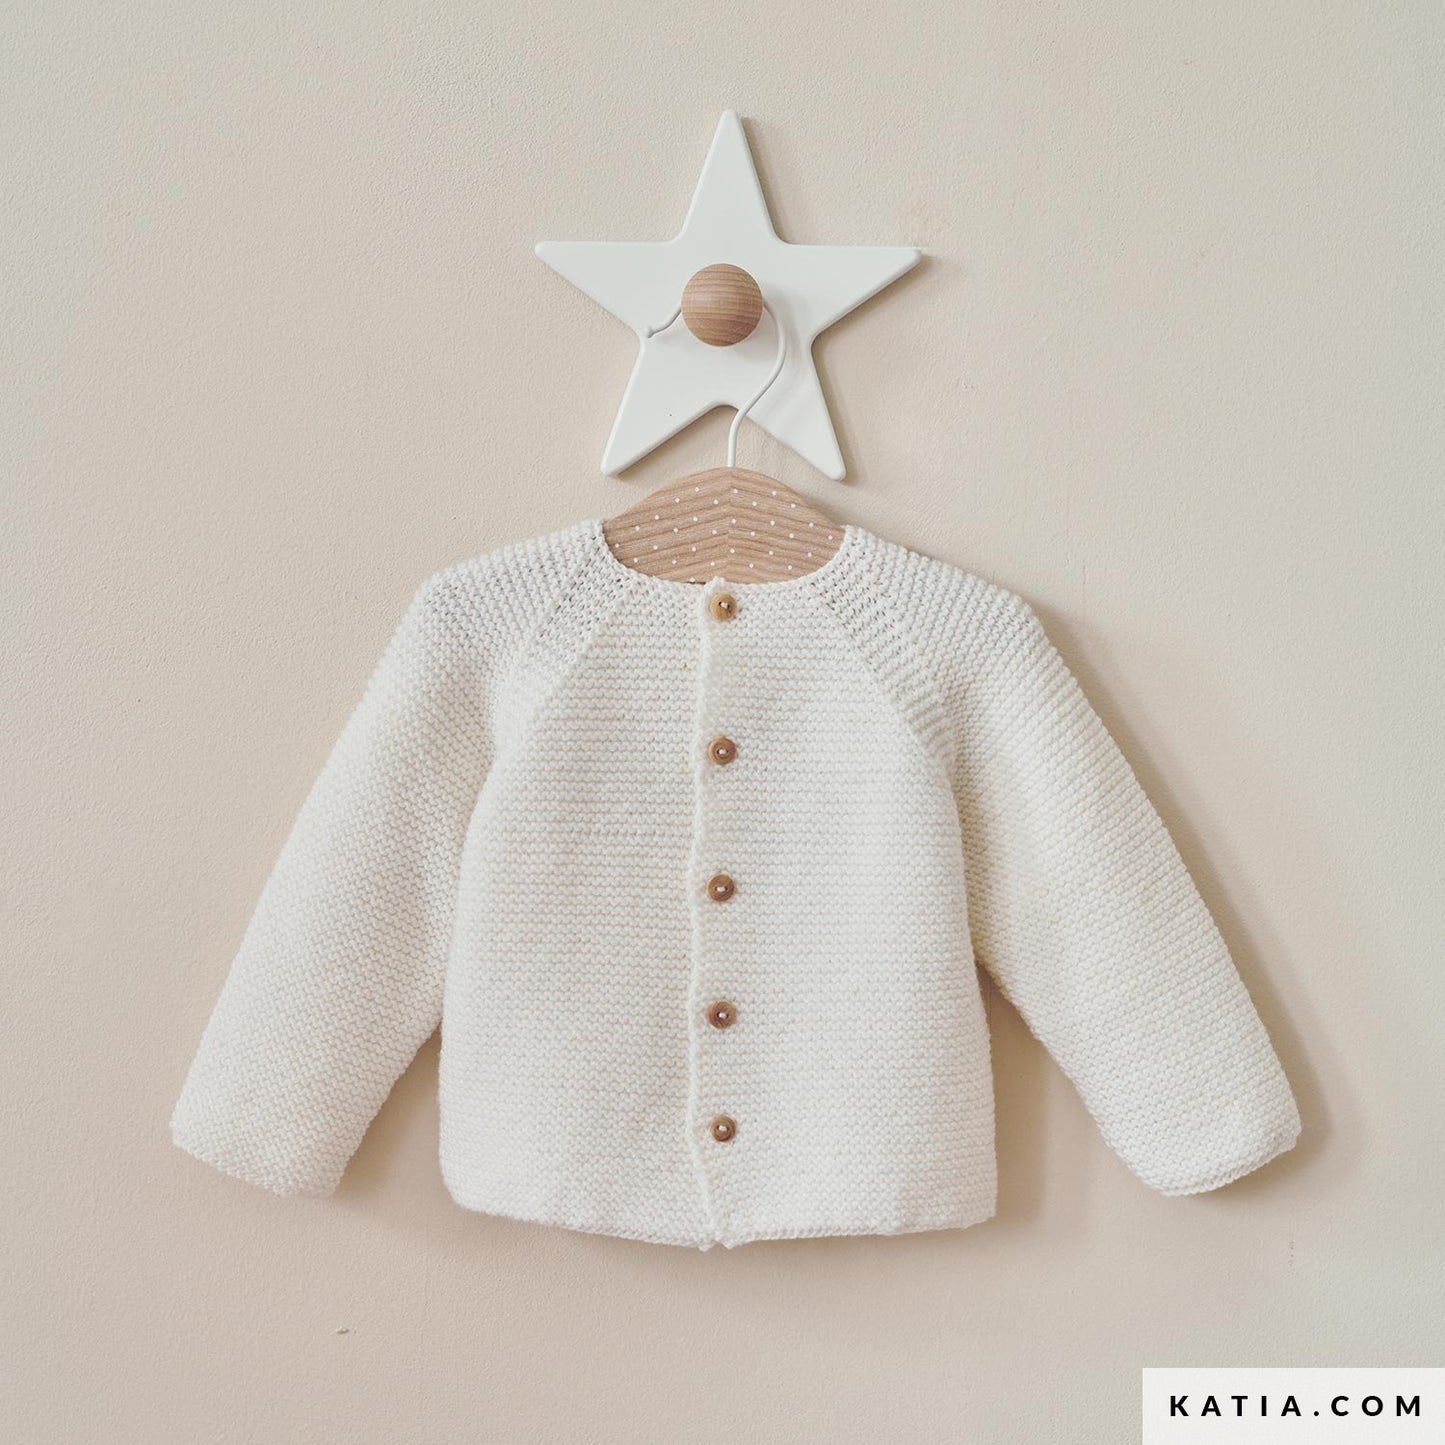 Katia tijdschrift // Concept Baby's Dressing